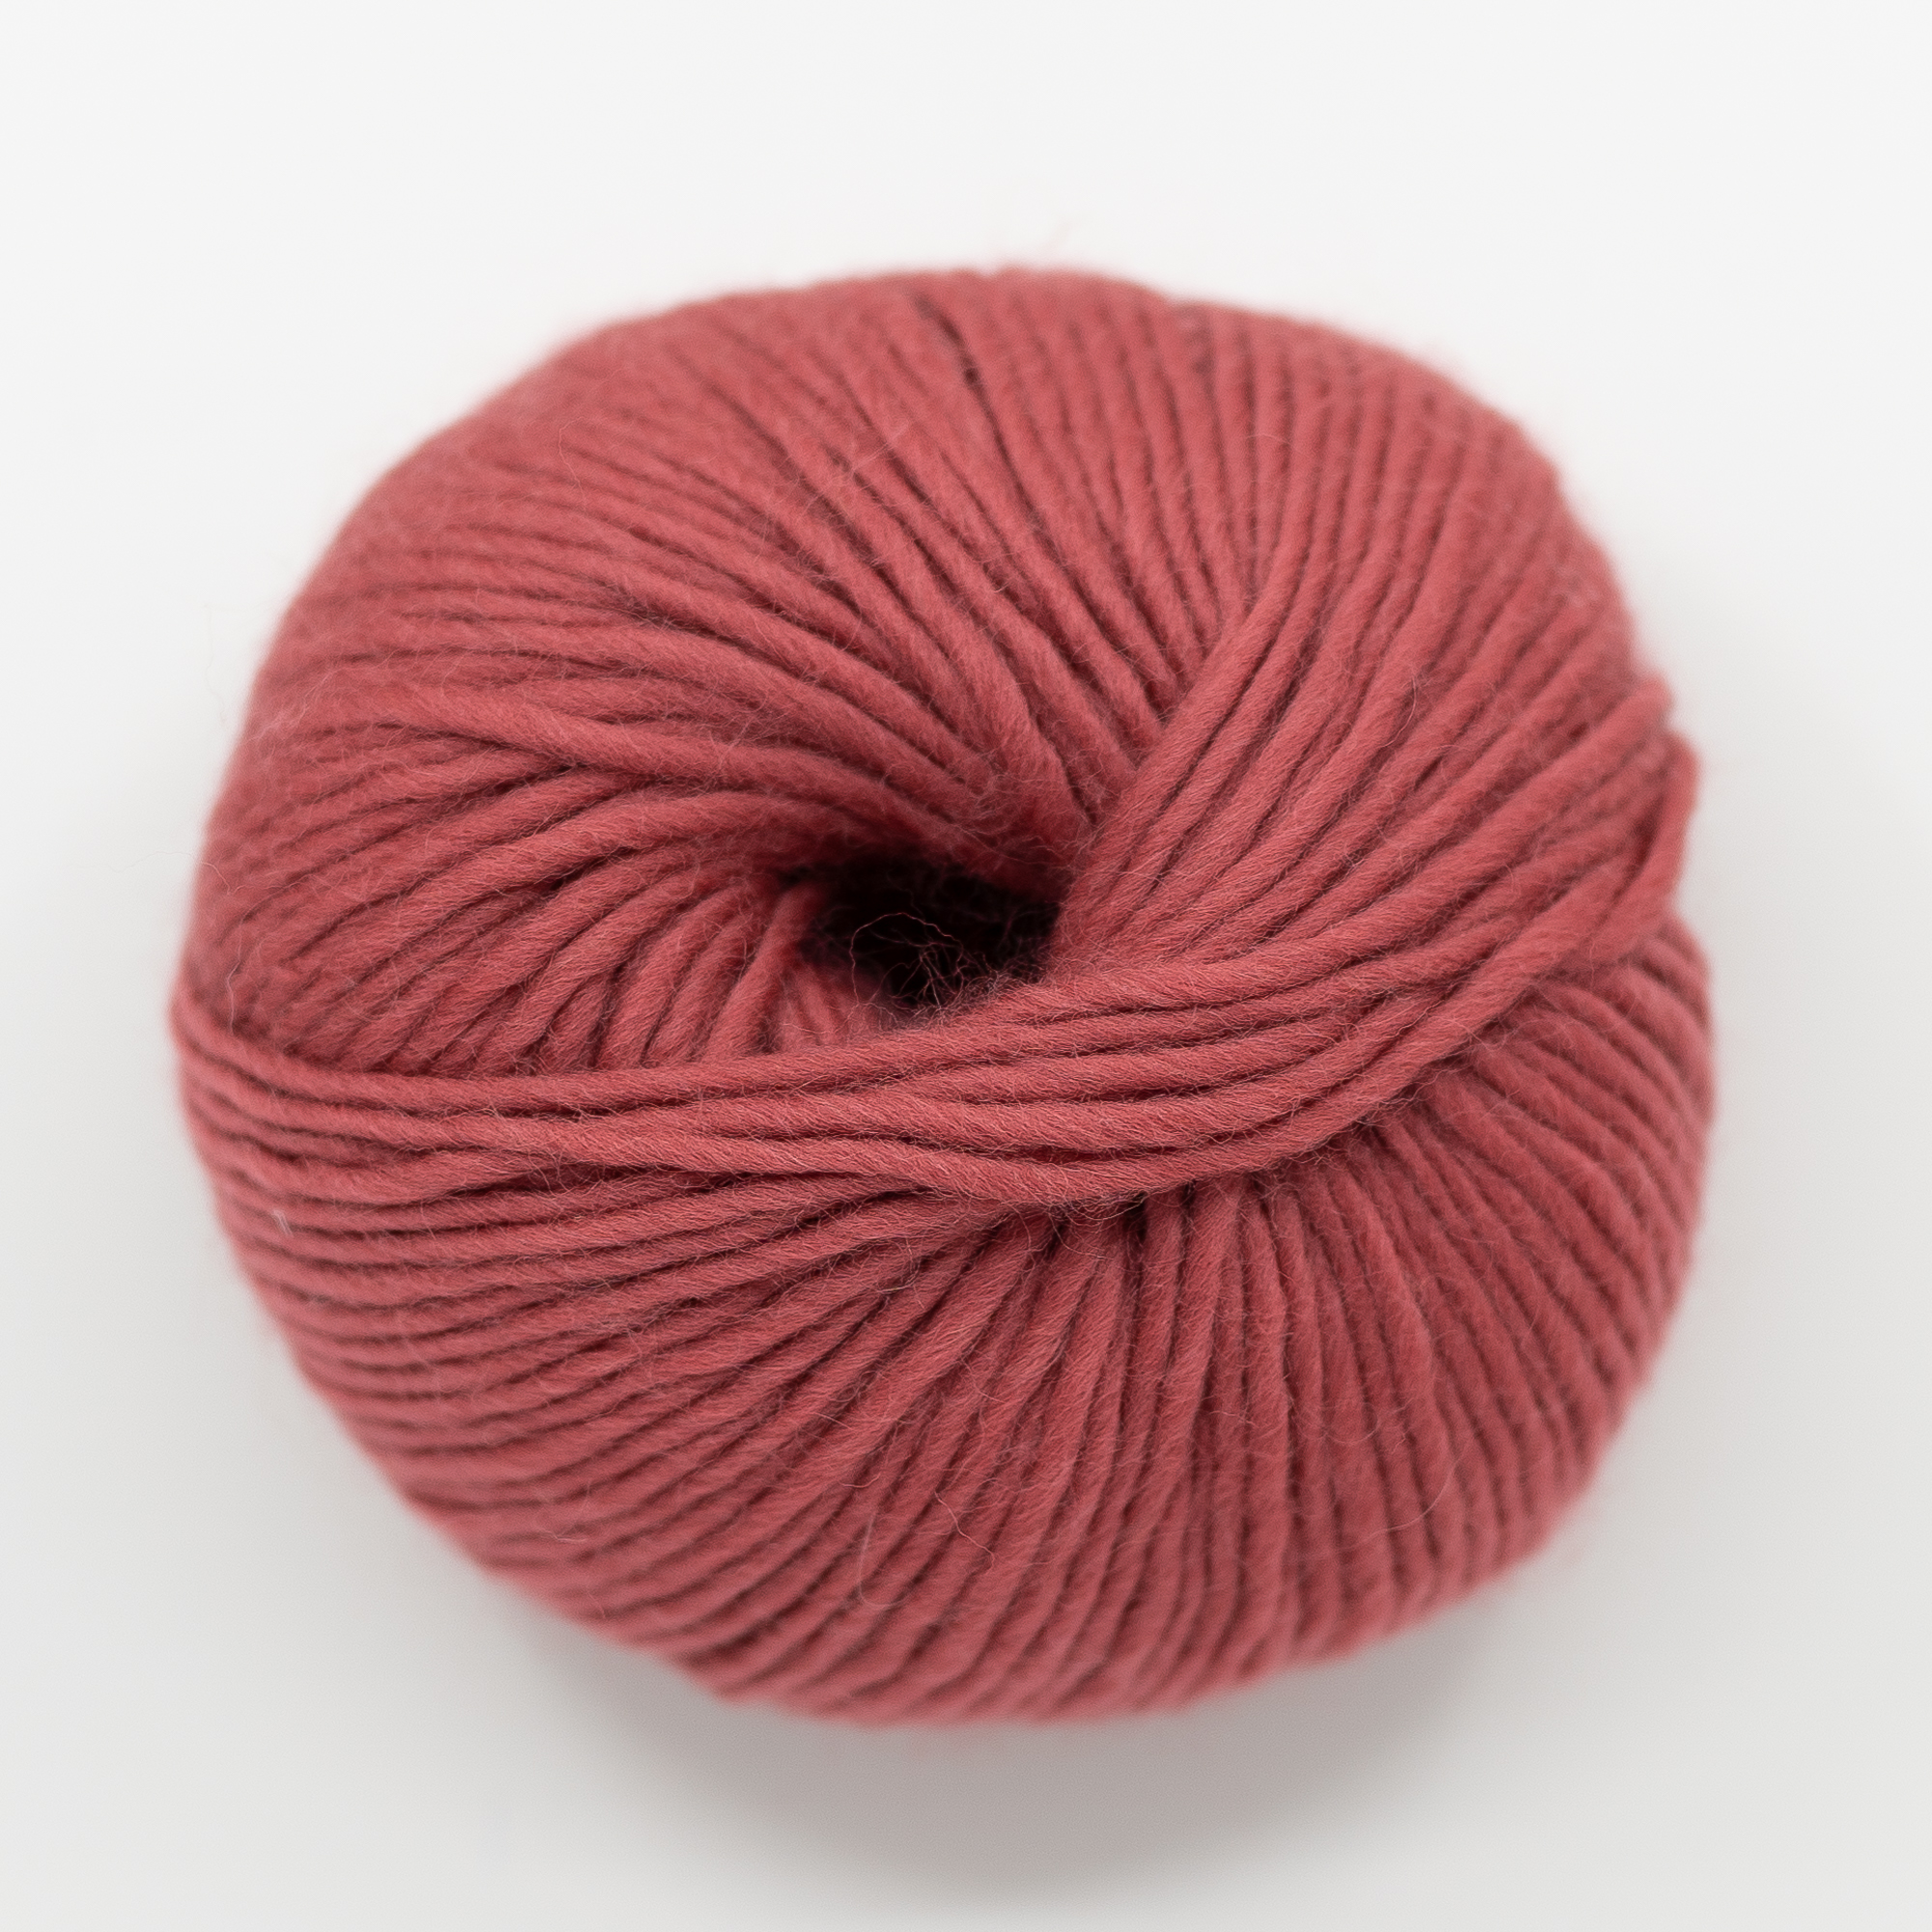  - Rhubarb | Pale red yarn | Hip Wool - by HipKnitShop - 30/05/2021